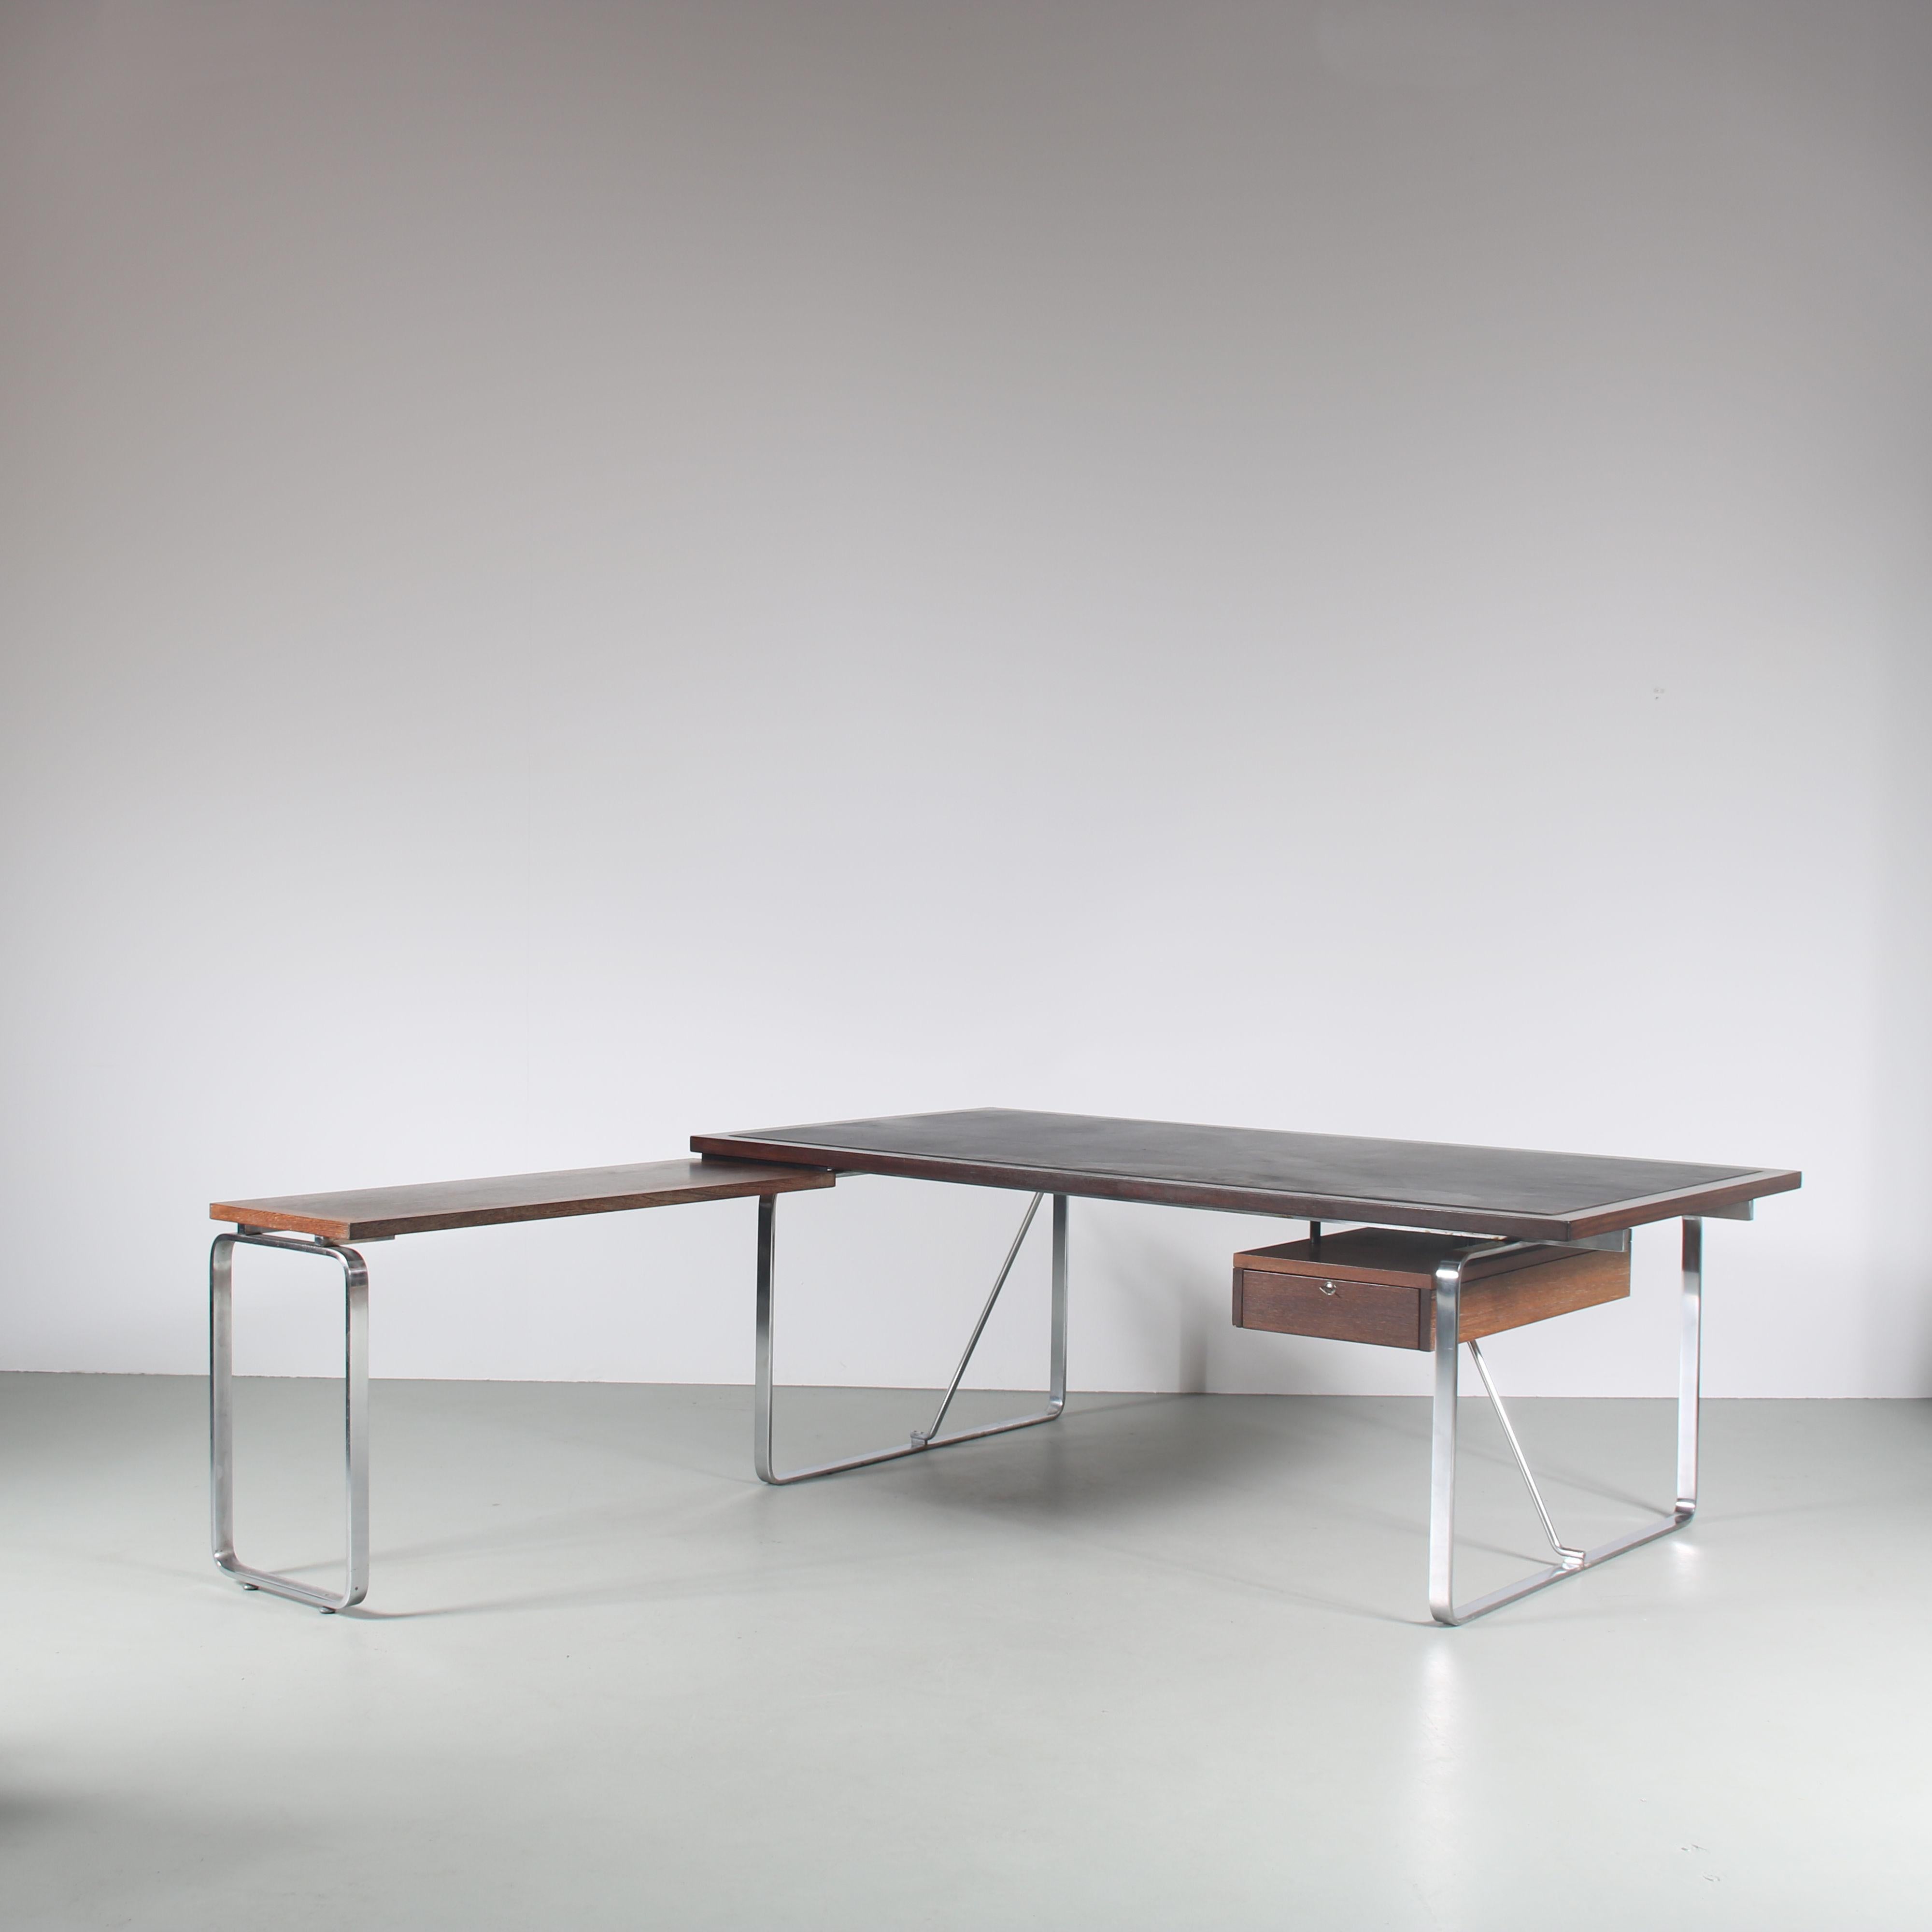 Ein luxuriöser, L-förmiger Schreibtisch, entworfen von  Schreibtisch für Führungskräfte, entworfen von Jorgen Lund & Ole Larsen, hergestellt von Bo-Ex in Dänemark um 1960.

Dieser Blickfang ist aus hochwertigem Wengé-Holz in einem wunderschönen